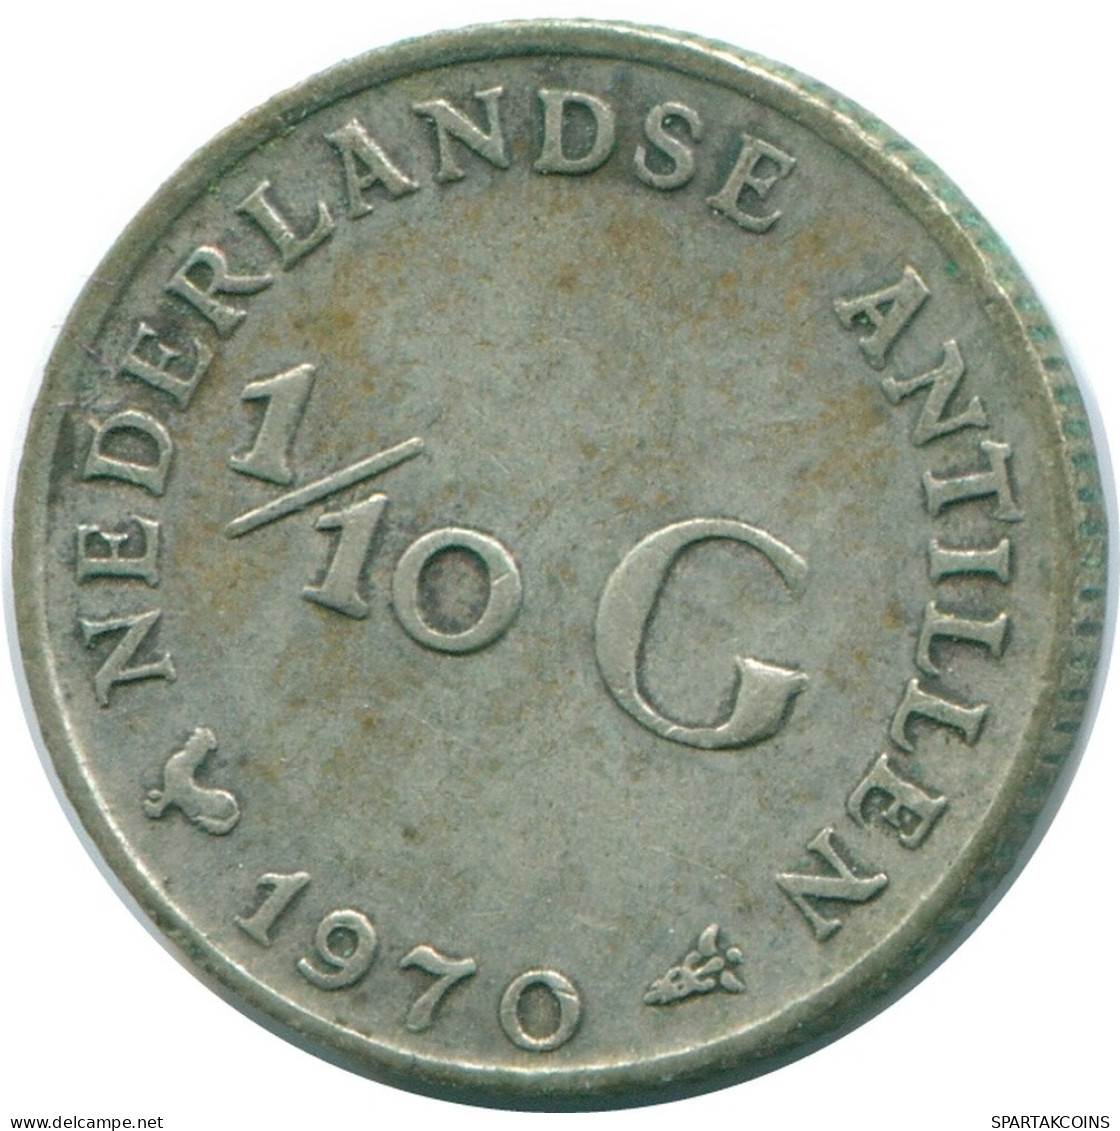 1/10 GULDEN 1970 NIEDERLÄNDISCHE ANTILLEN SILBER Koloniale Münze #NL13030.3.D.A - Niederländische Antillen